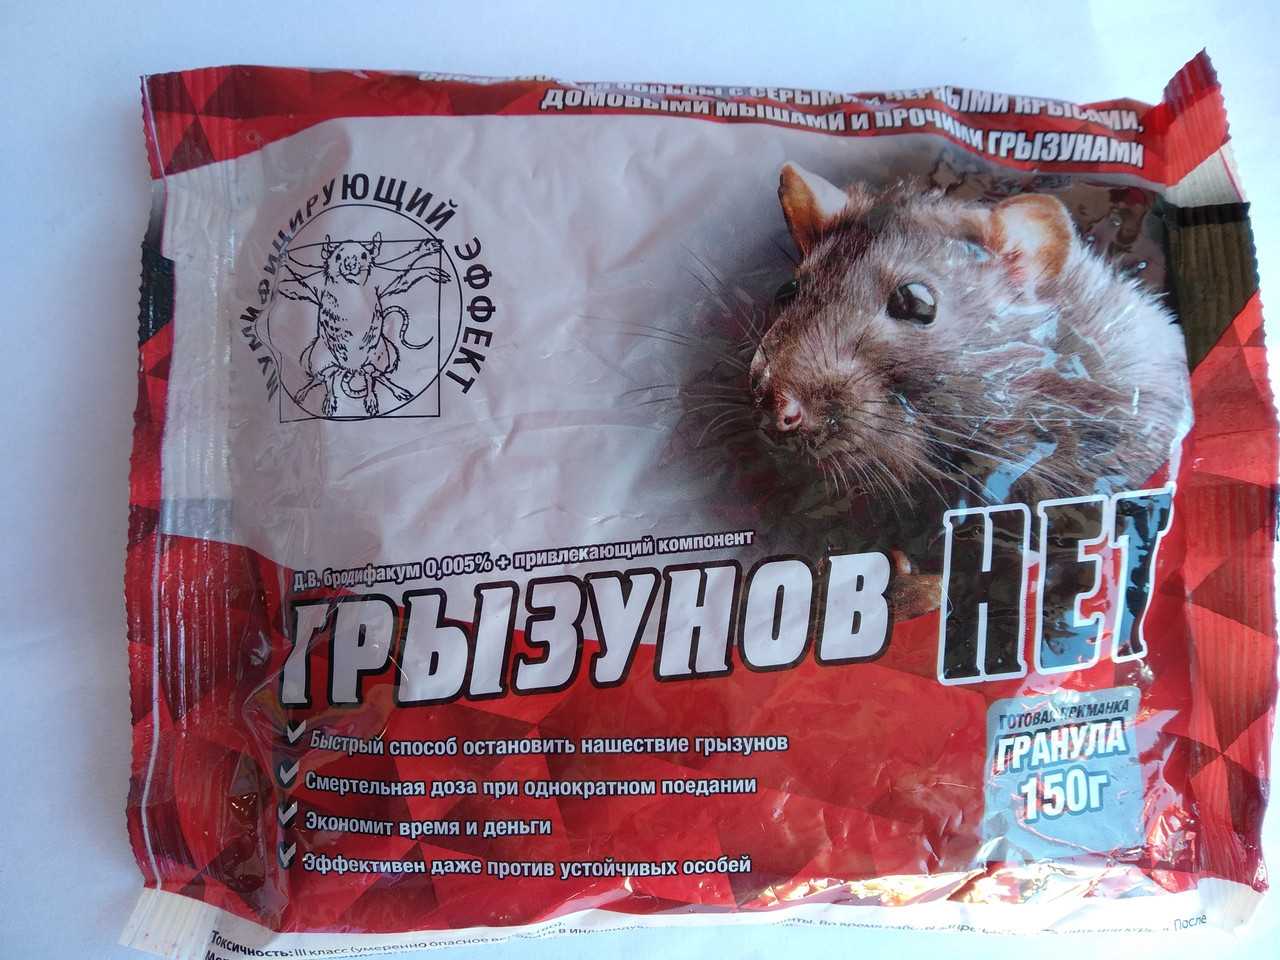 Отрава с мумифицирующим эффектом. Крысиный яд красный в гранулах. Отрава для крыс. Яд для крыс. Отрава для грызунов мумифицирующая.